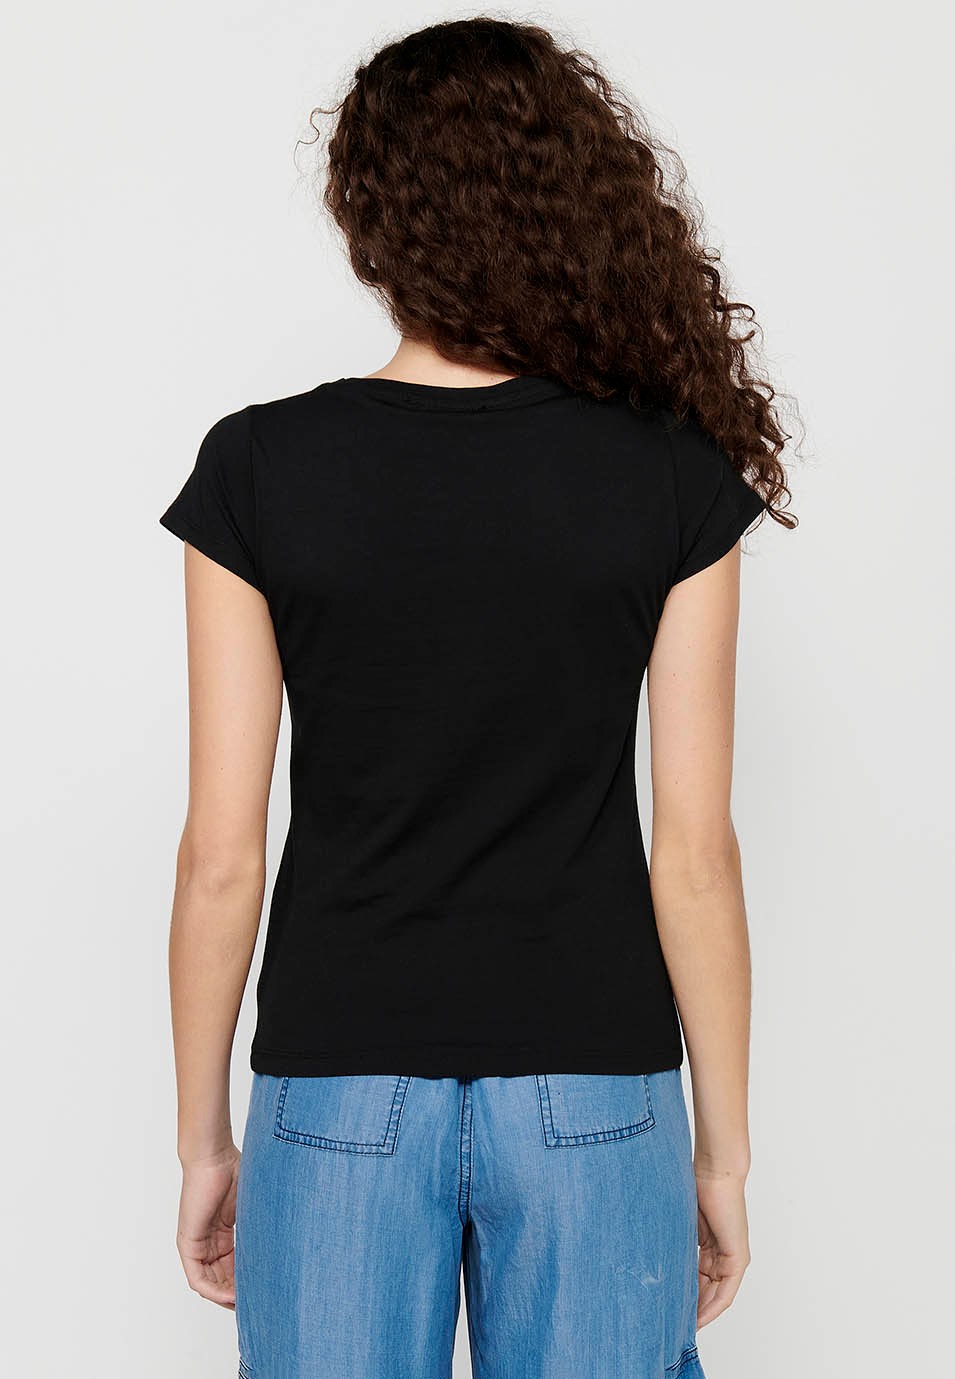 Women's Black Color Front Print Round Neck Cotton Short Sleeve T-shirt 1